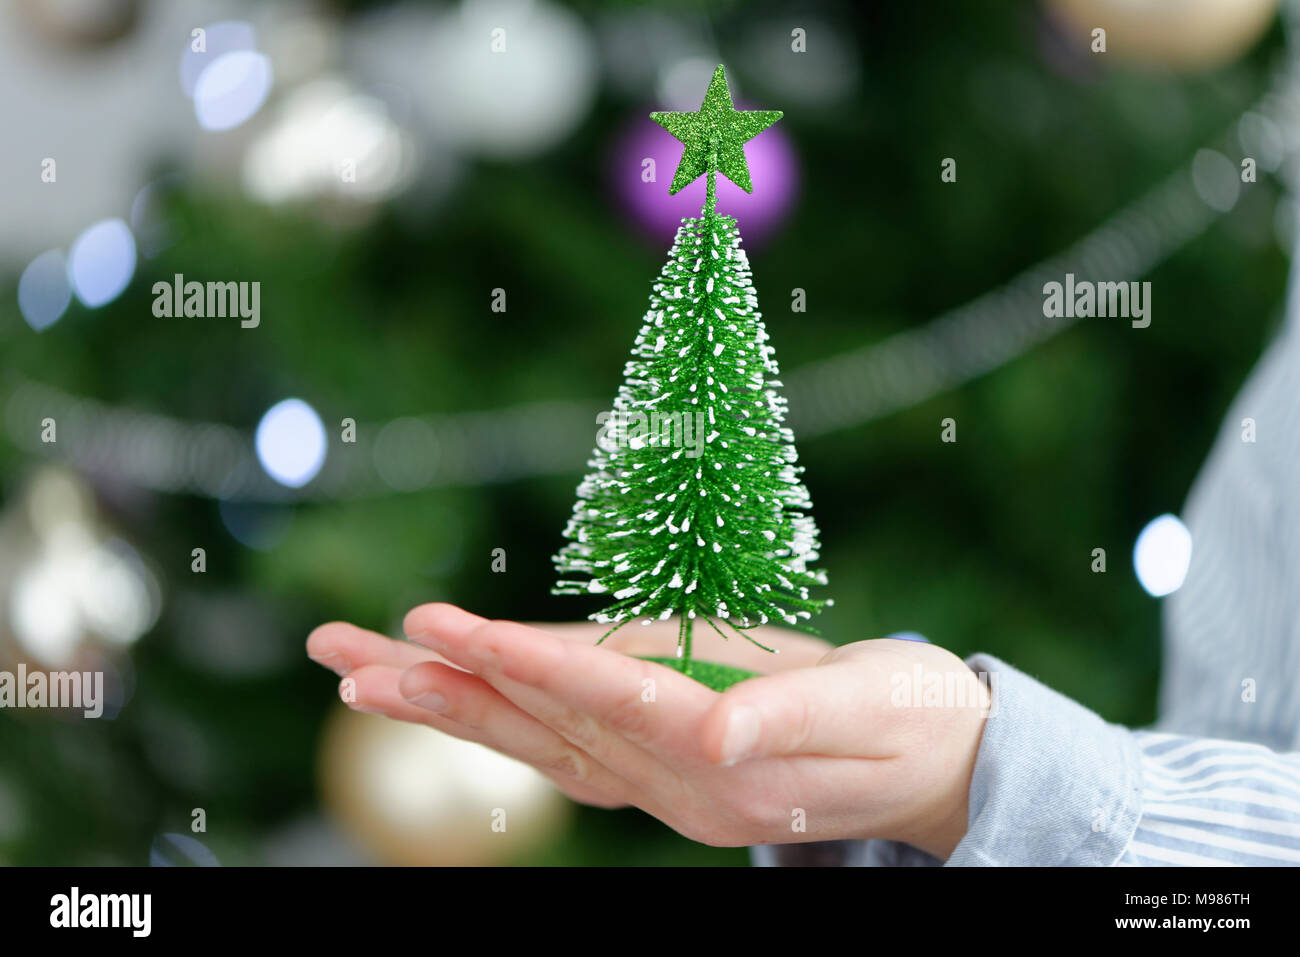 Junge, genre hält einen kleinen Tannenbaum mit vor dem Lichterketten Christbaum, Weihnachten, Bayern, Deutschland Banque D'Images